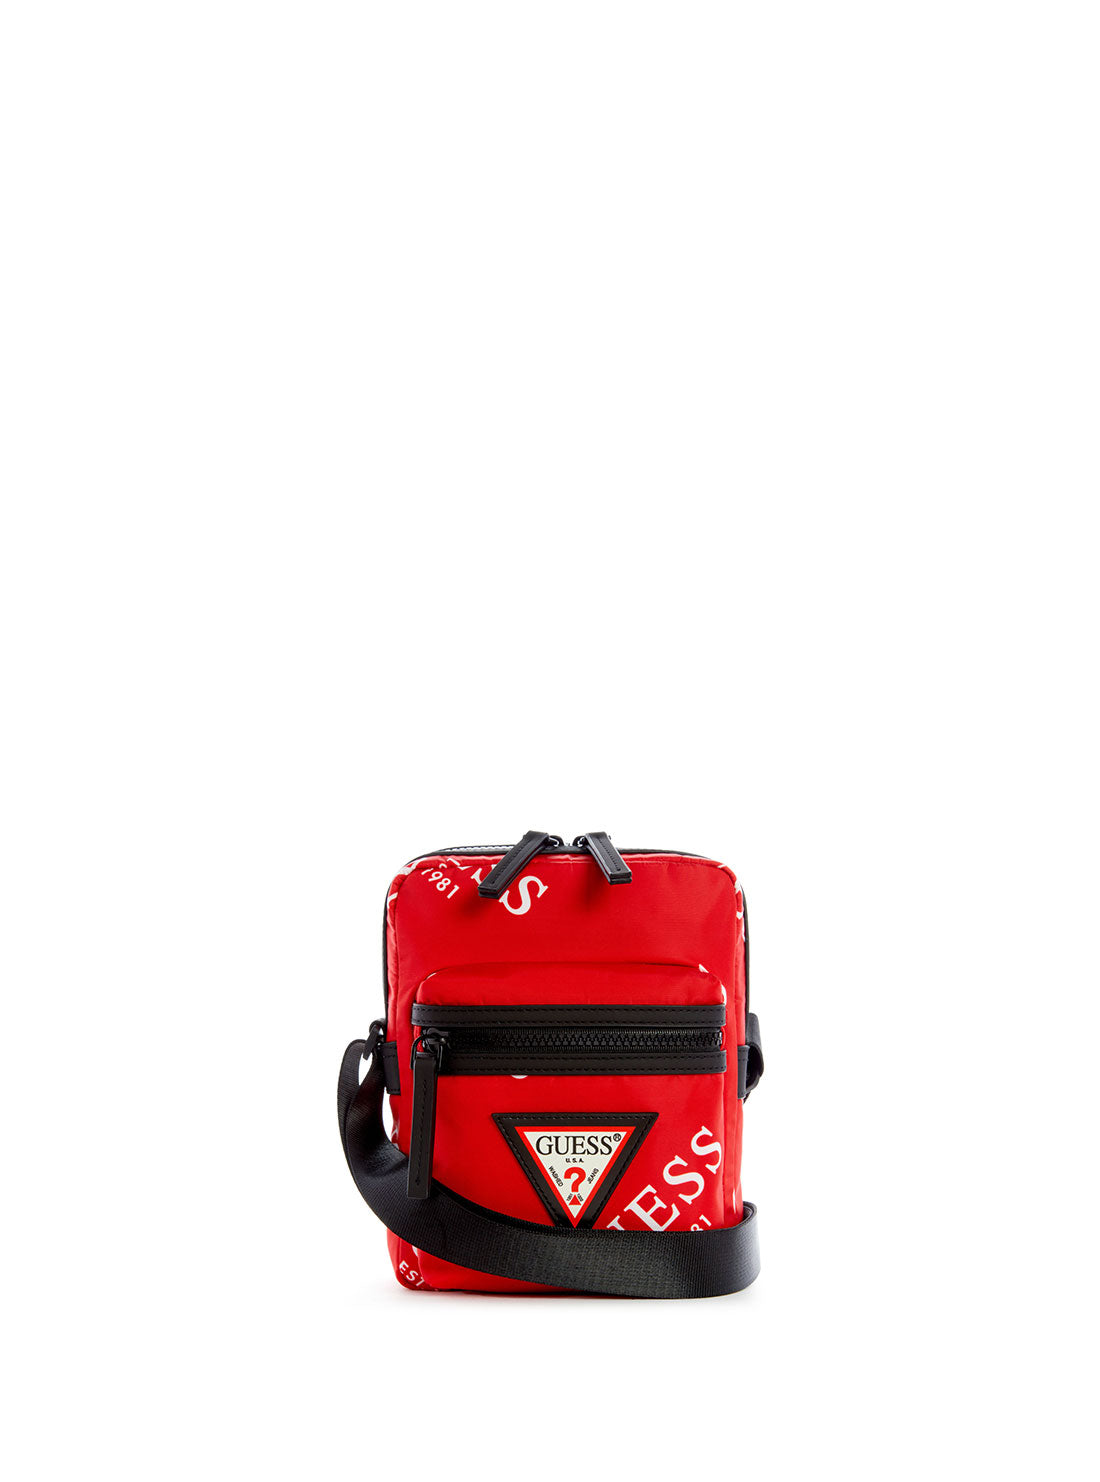 GUESS Men's Red Originals Logo Camera Bag TL703191 Front View